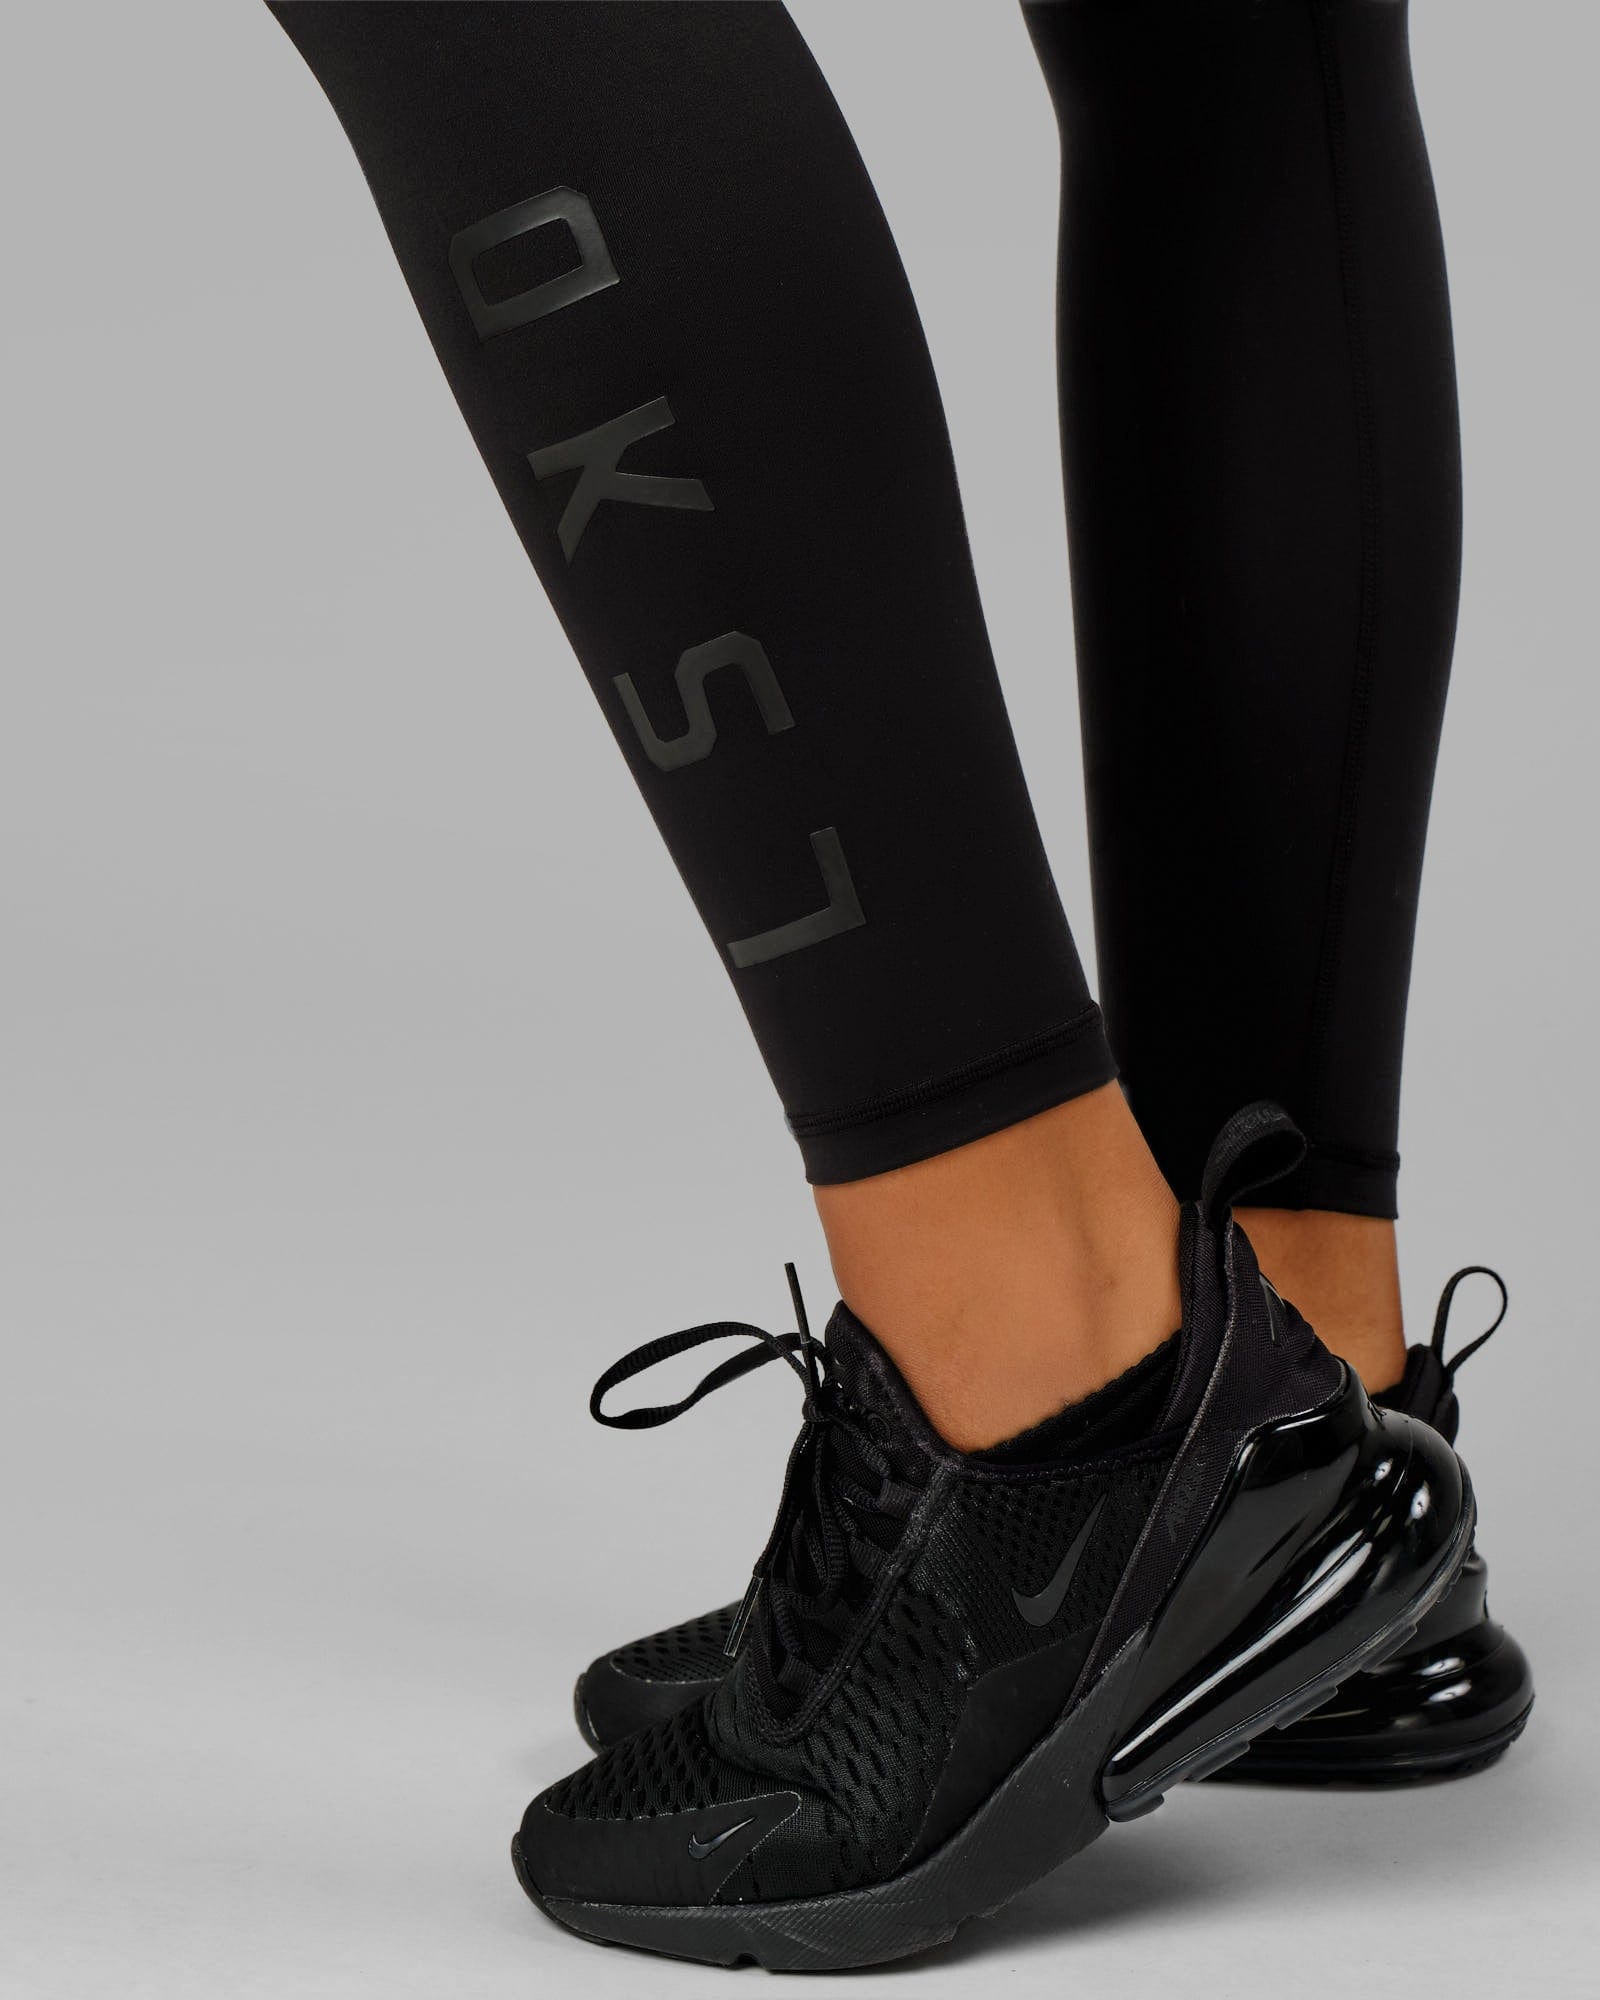 Rep Full Length Leggings - Black-Black – LSKD US